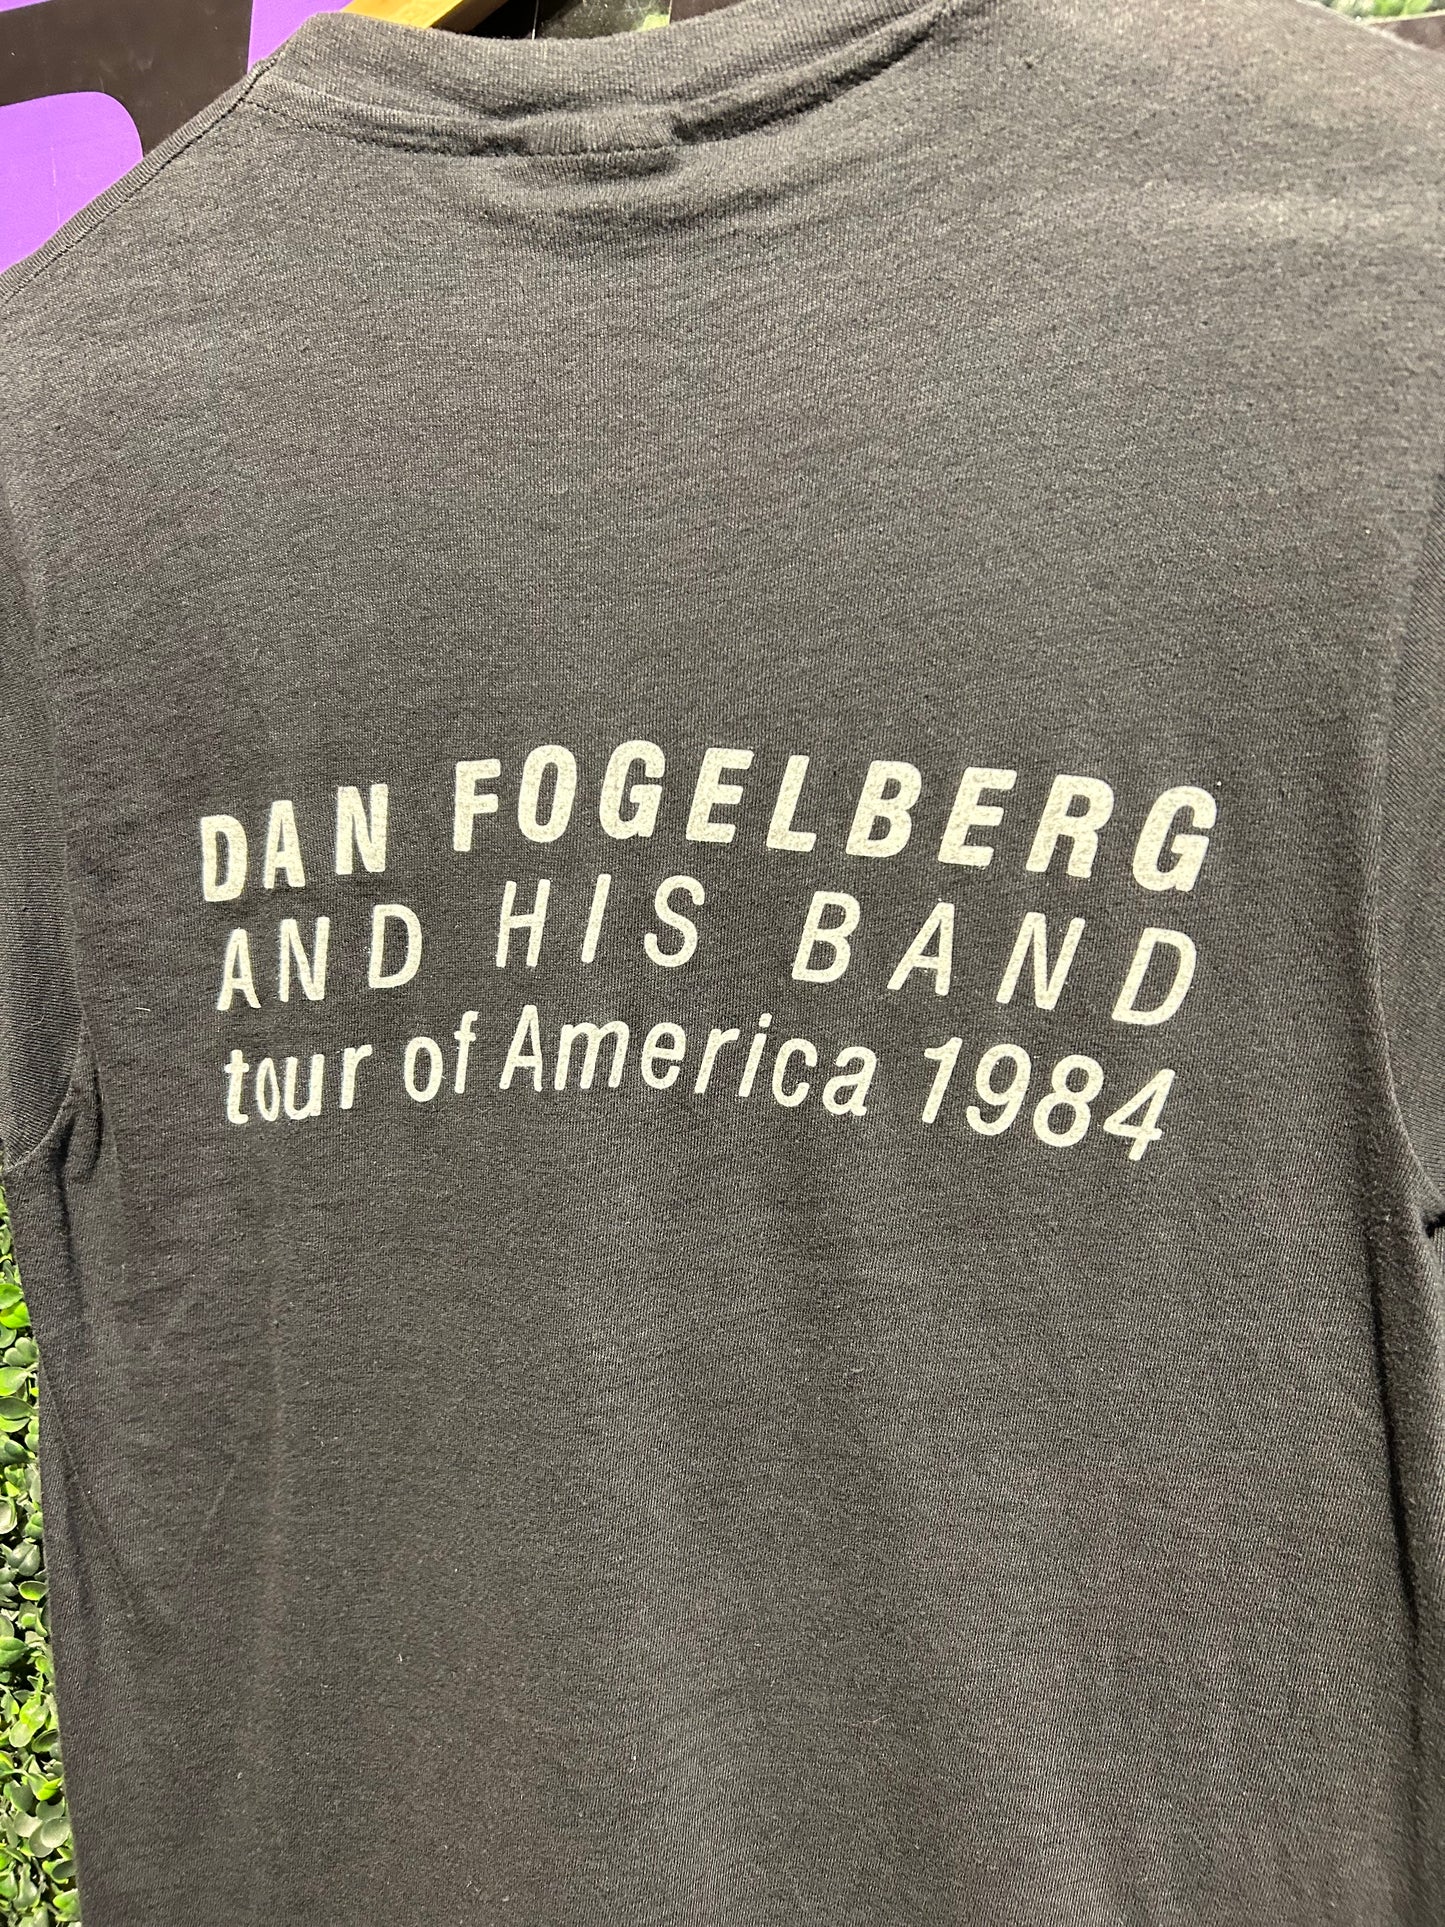 1984 Dan Fogelberg Tour of America T-Shirt. Size S/M